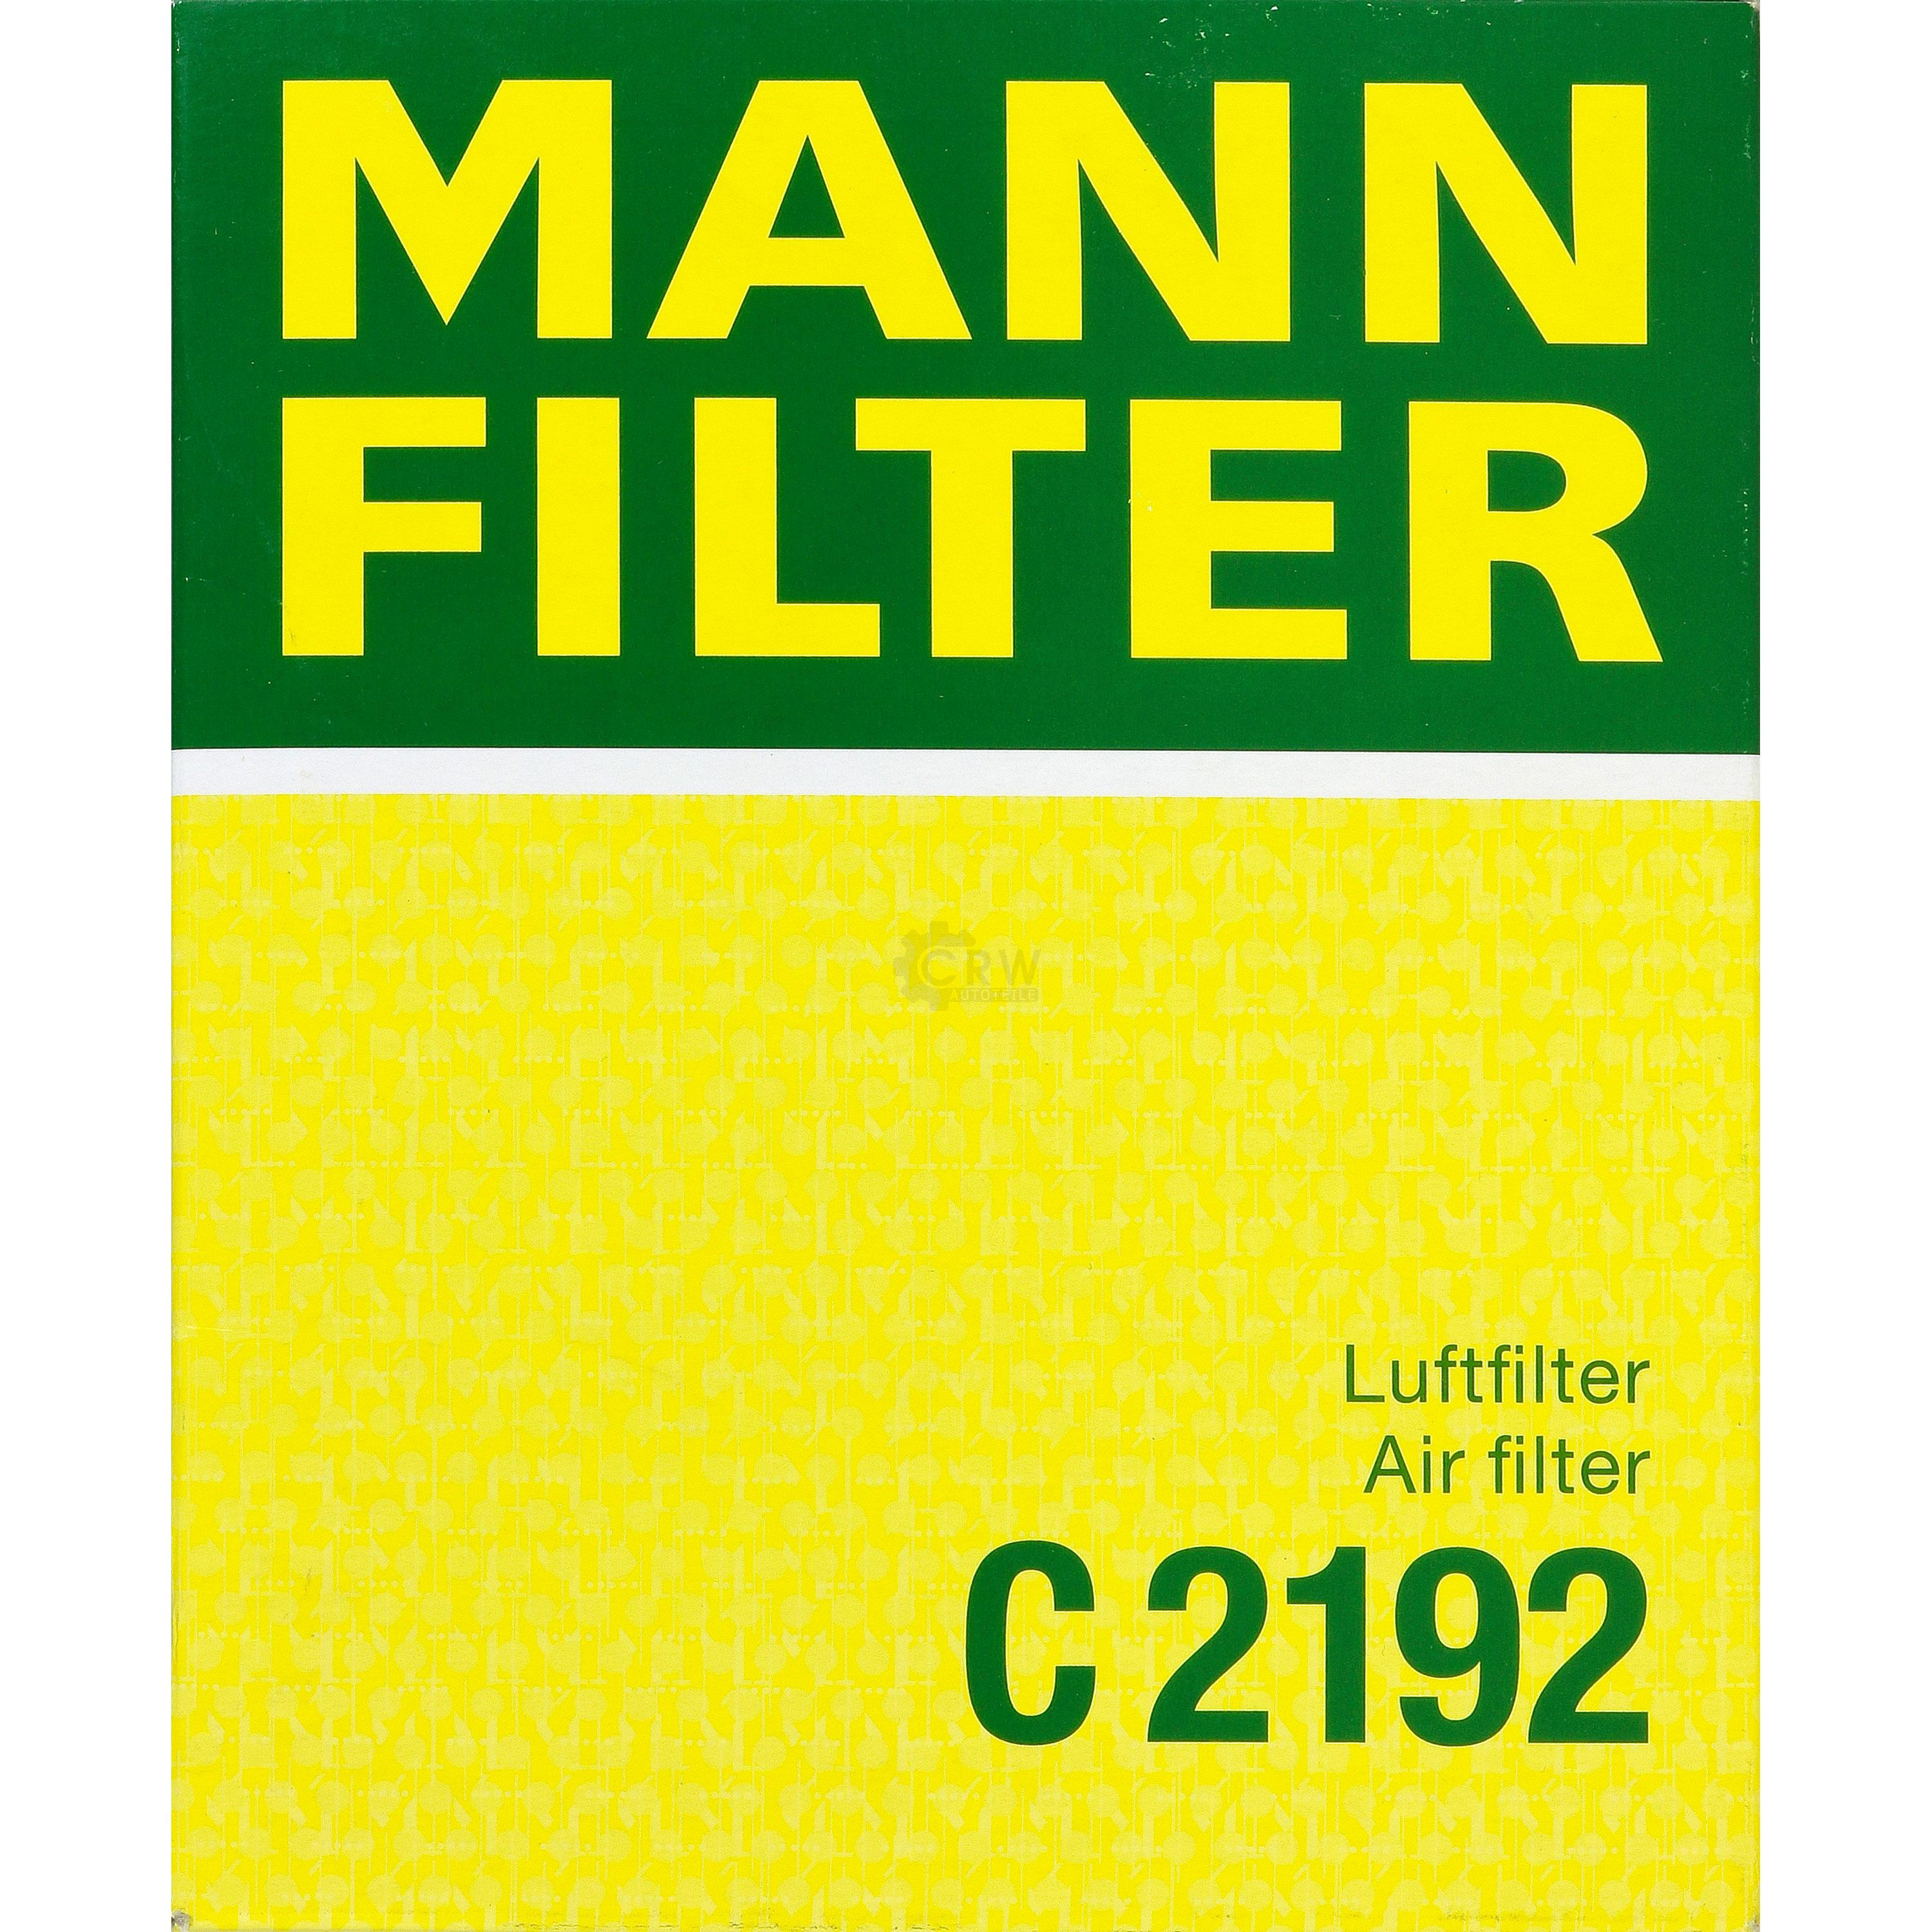 MANN-FILTER Luftfilter für Peugeot 206 CC 2D 2.0 S16 2A/C 2E/K Citroën Xsara